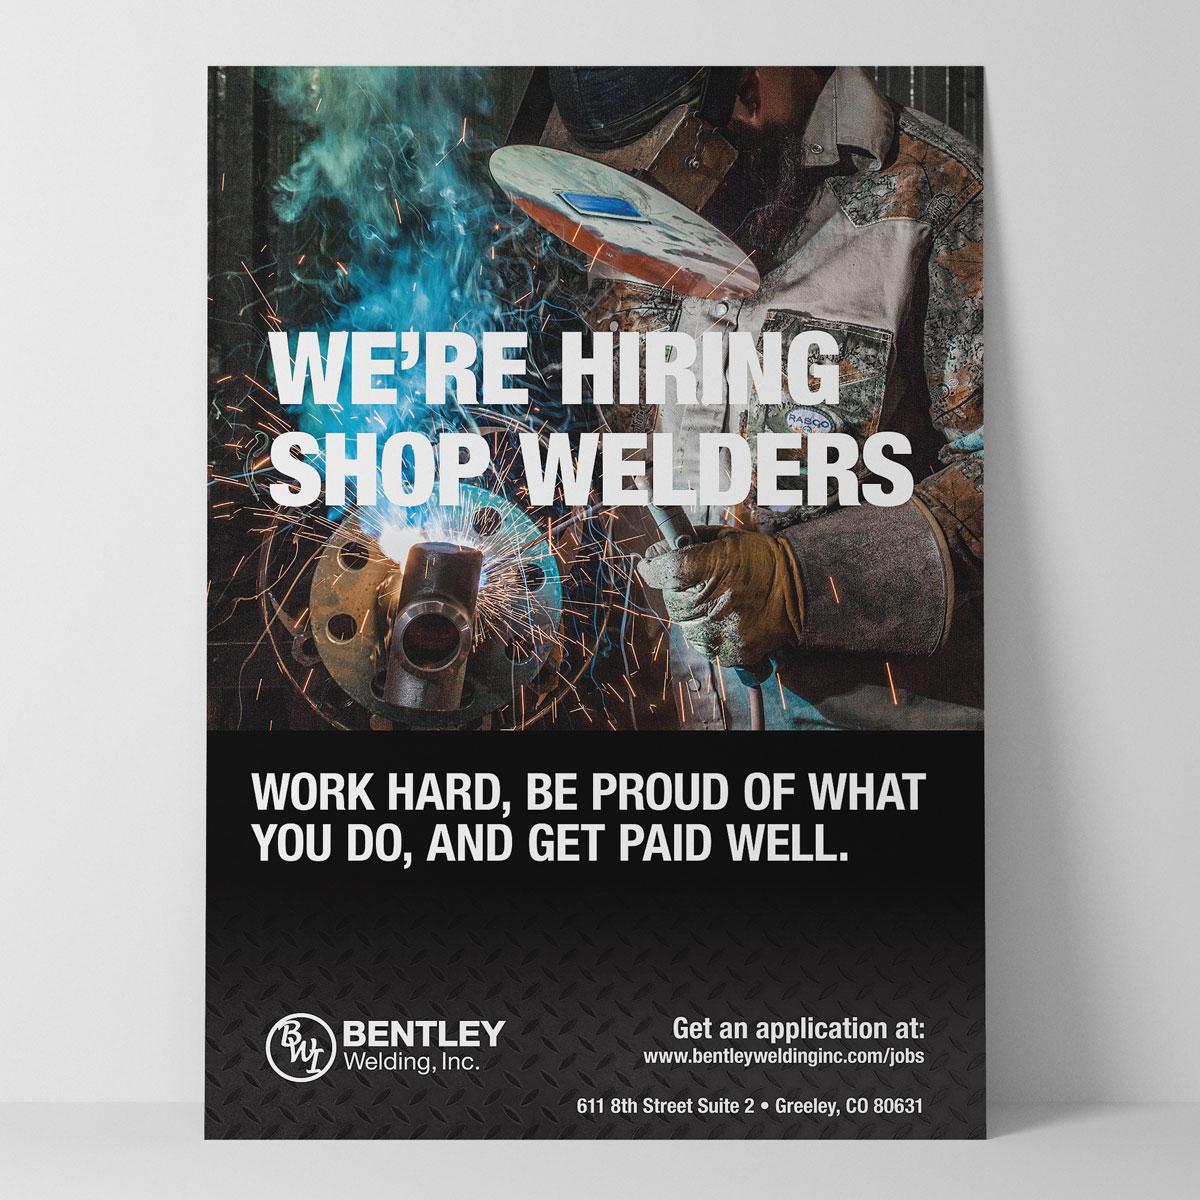 Job Poster for Bentley Welding, Inc.